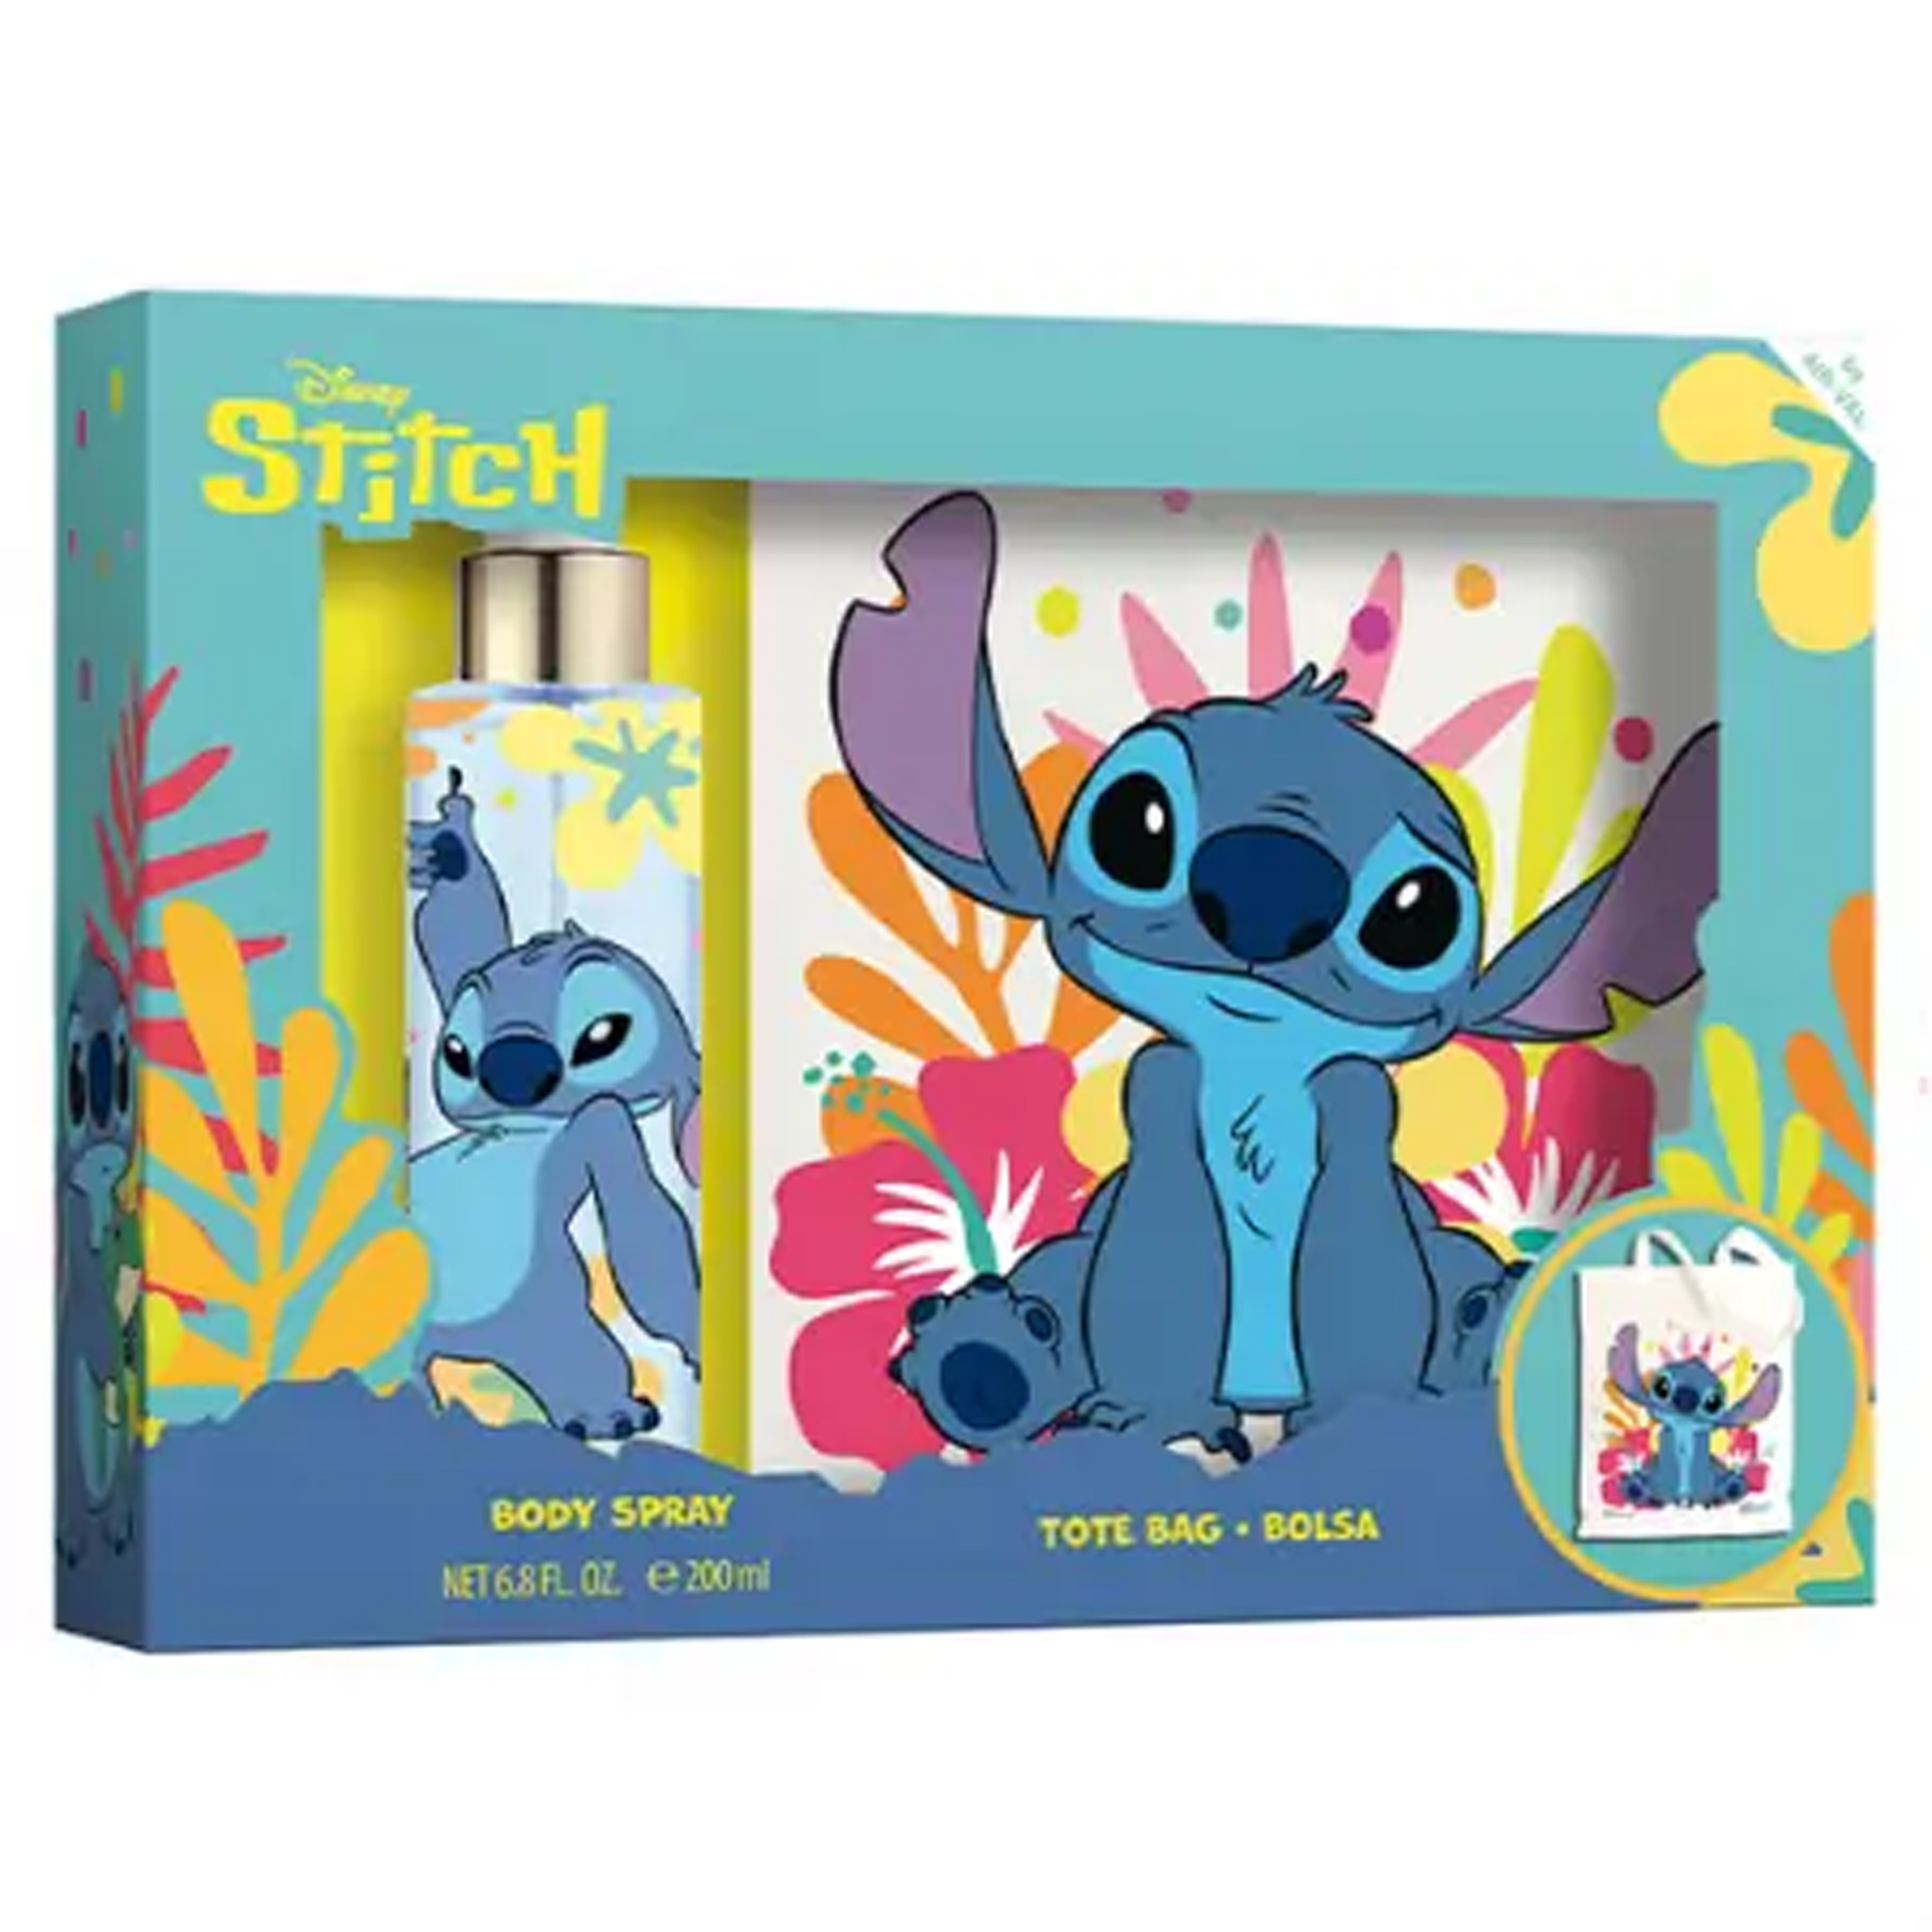 Air Val - Disney Lilo & Stitch Eau de toilette enfant Stitch - 30 ml :  : Beauté et Parfum